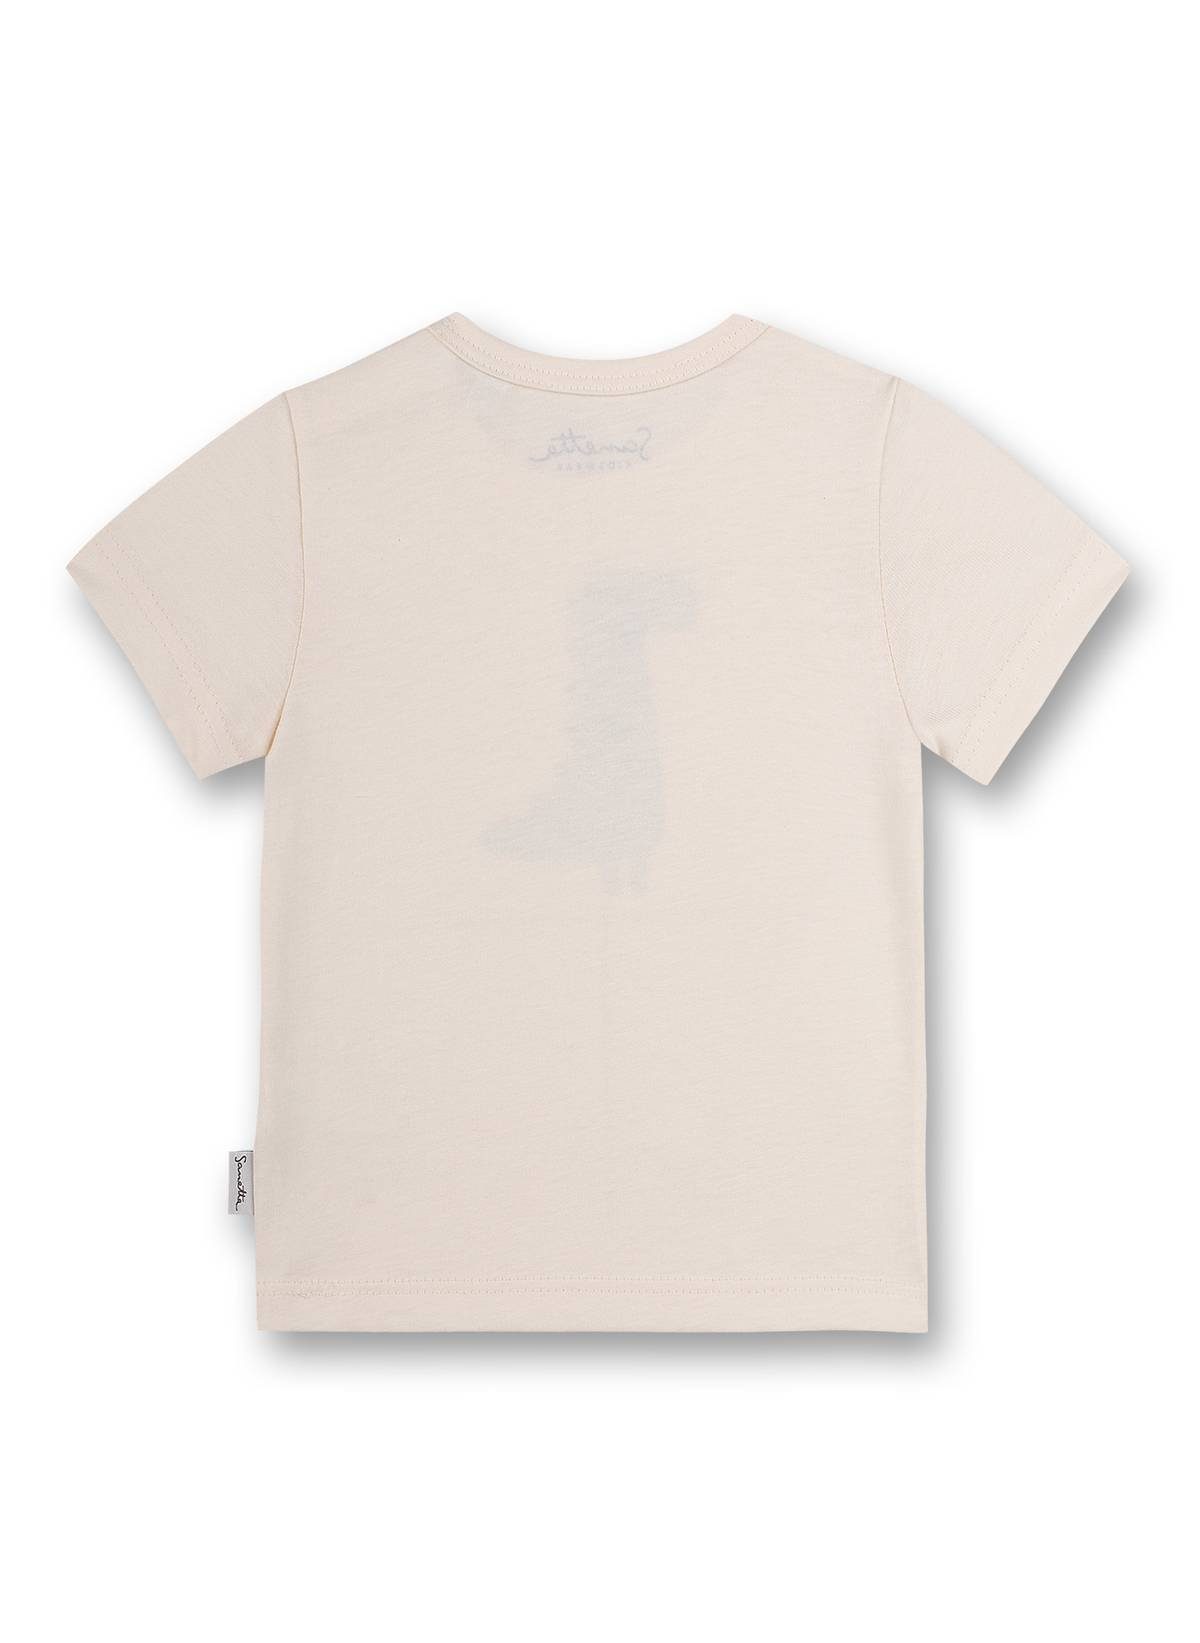 T-Shirt Natur Kurzarm, T-Shirt Sanetta Jungen - Rundhals Baby,